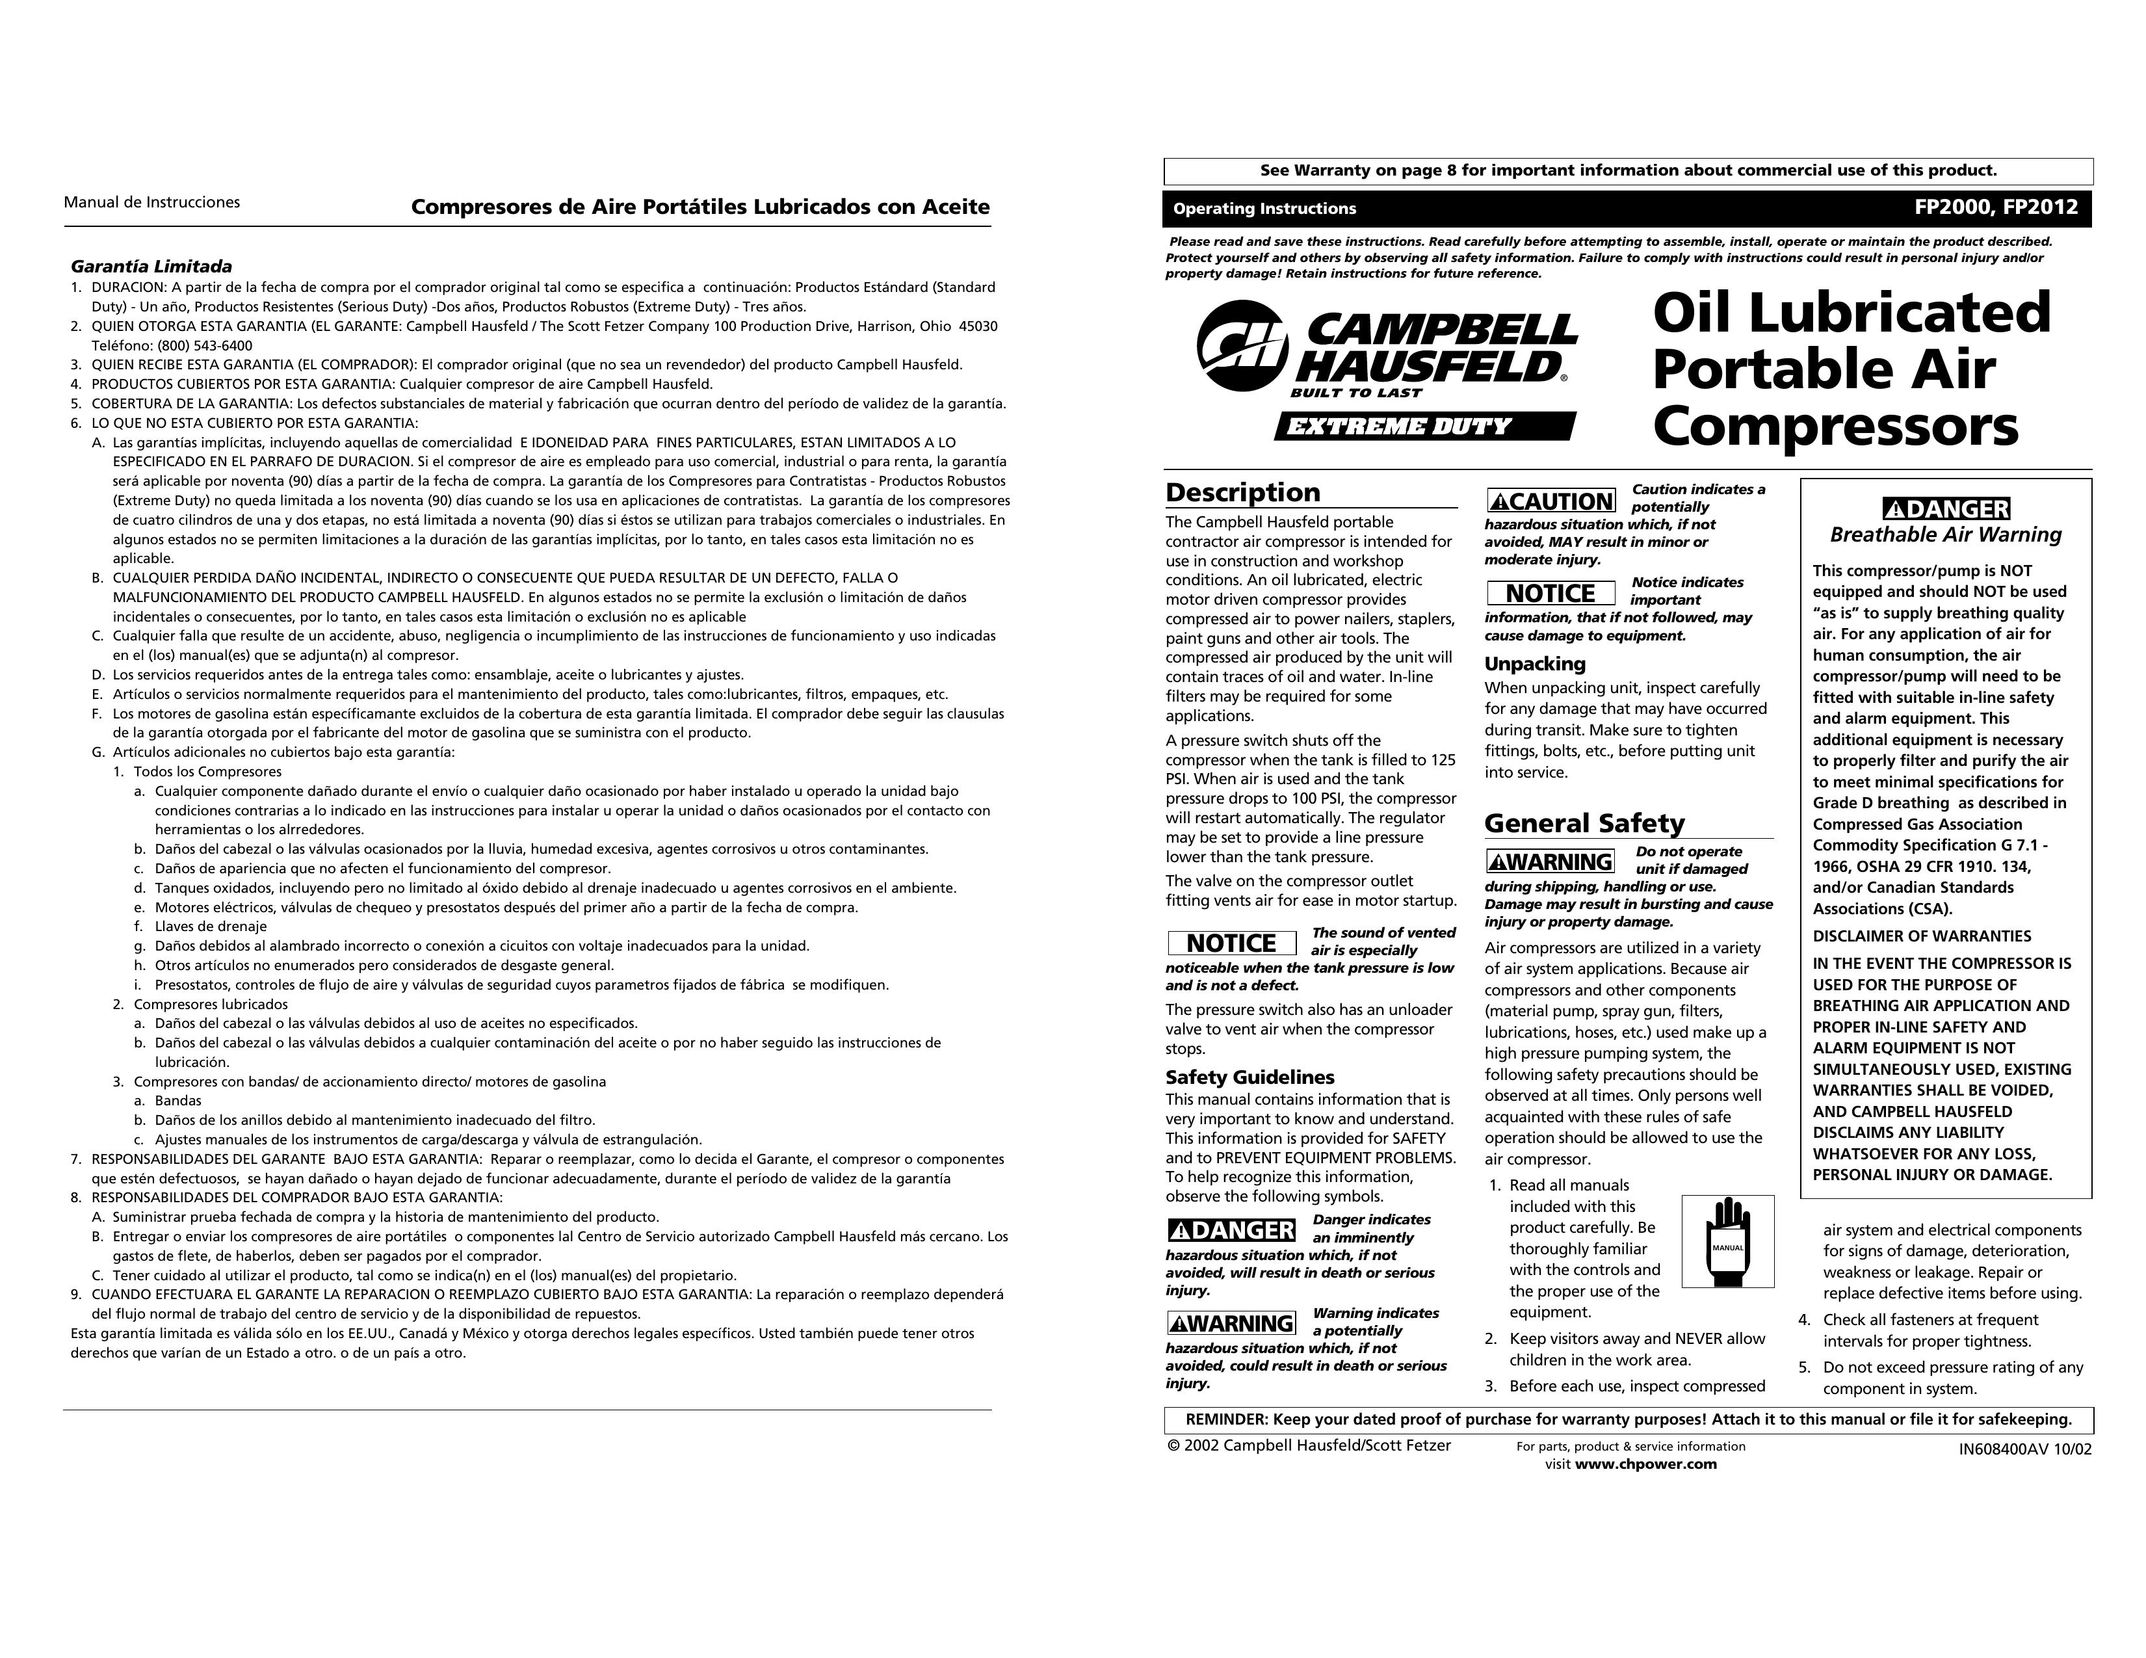 Campbell Hausfeld FP2000 Air Compressor User Manual